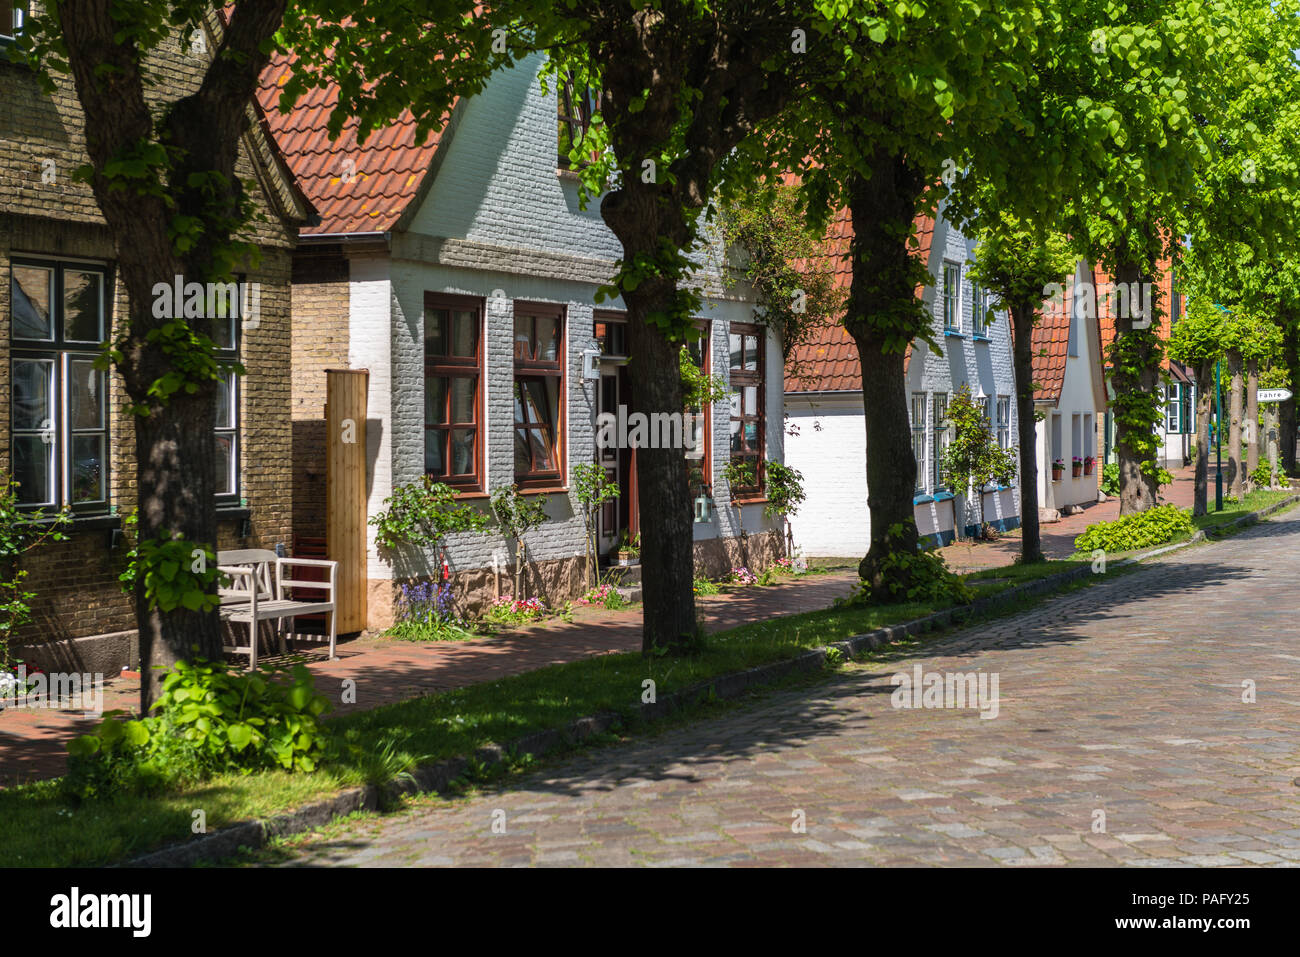 Maisons dans la Lange Strasse, la seule rue dans la plus petite ville d'Allemagne, Arnis, Schlei, Angeln, Schleswig-Holstein, Allemagne, Allemagne Banque D'Images